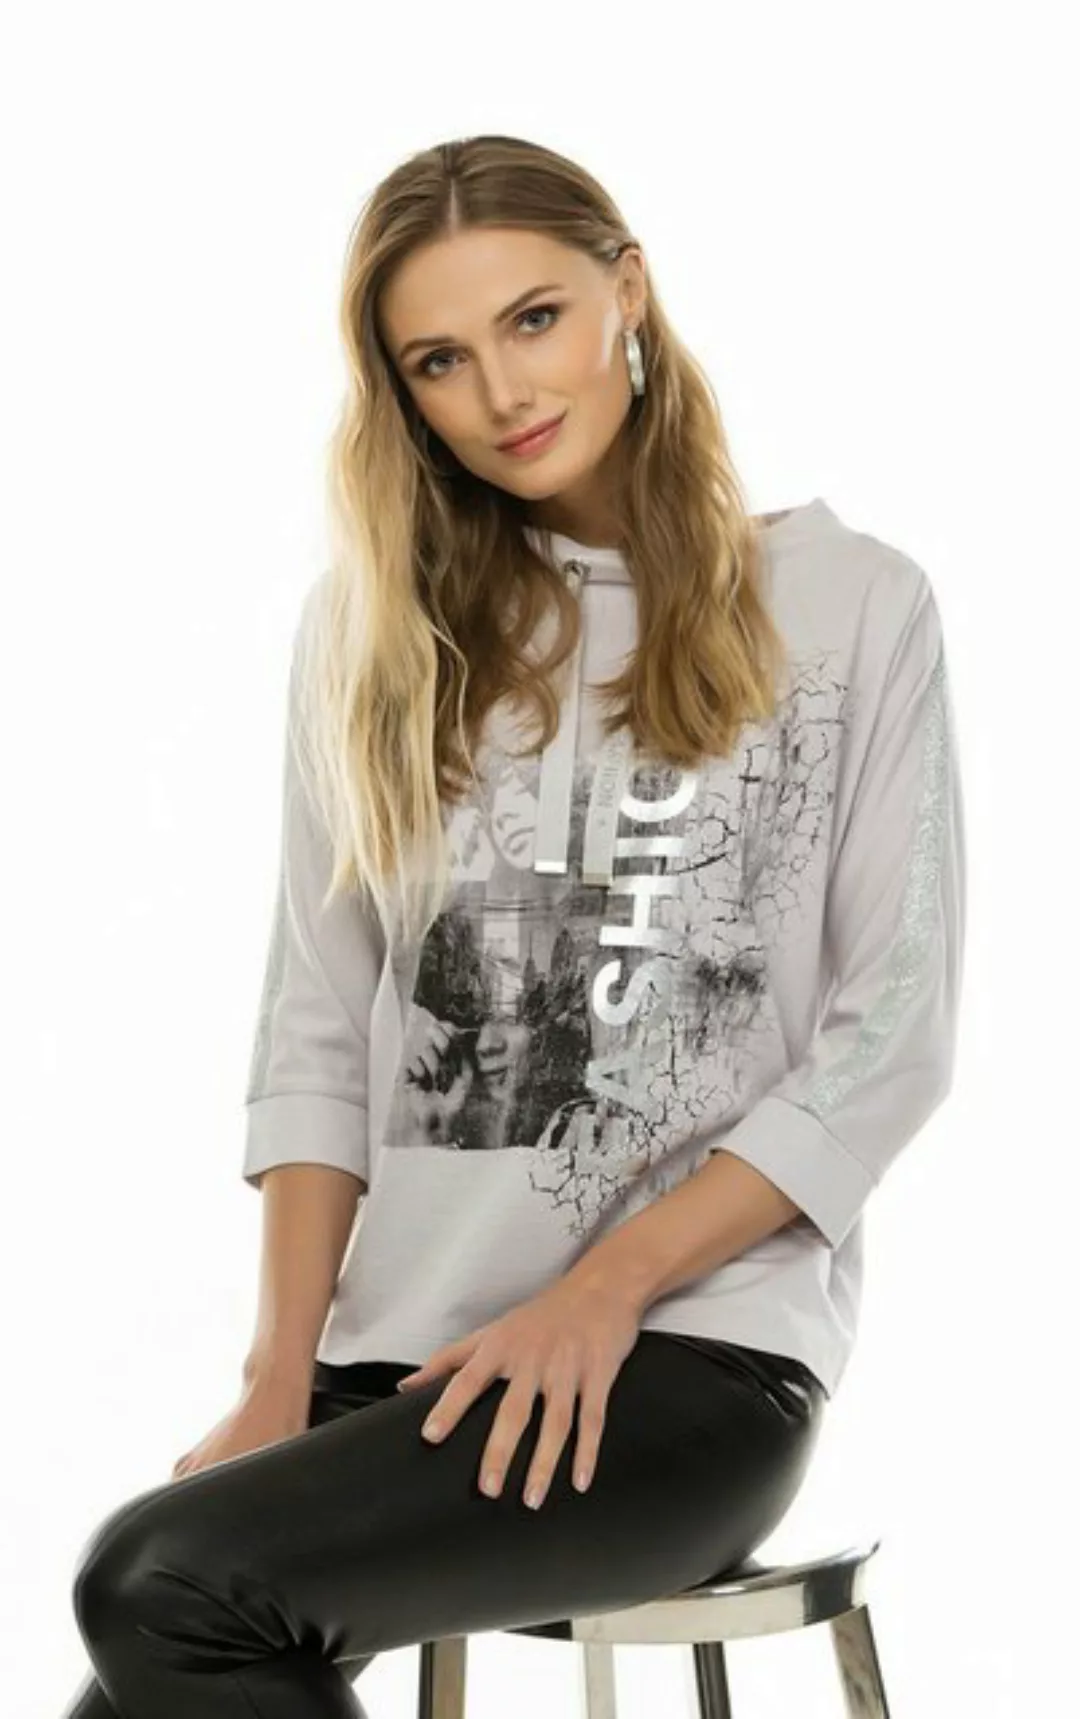 Passioni Sweatshirt Sommerpullover in grau mit Print und Glitzerdetails sow günstig online kaufen